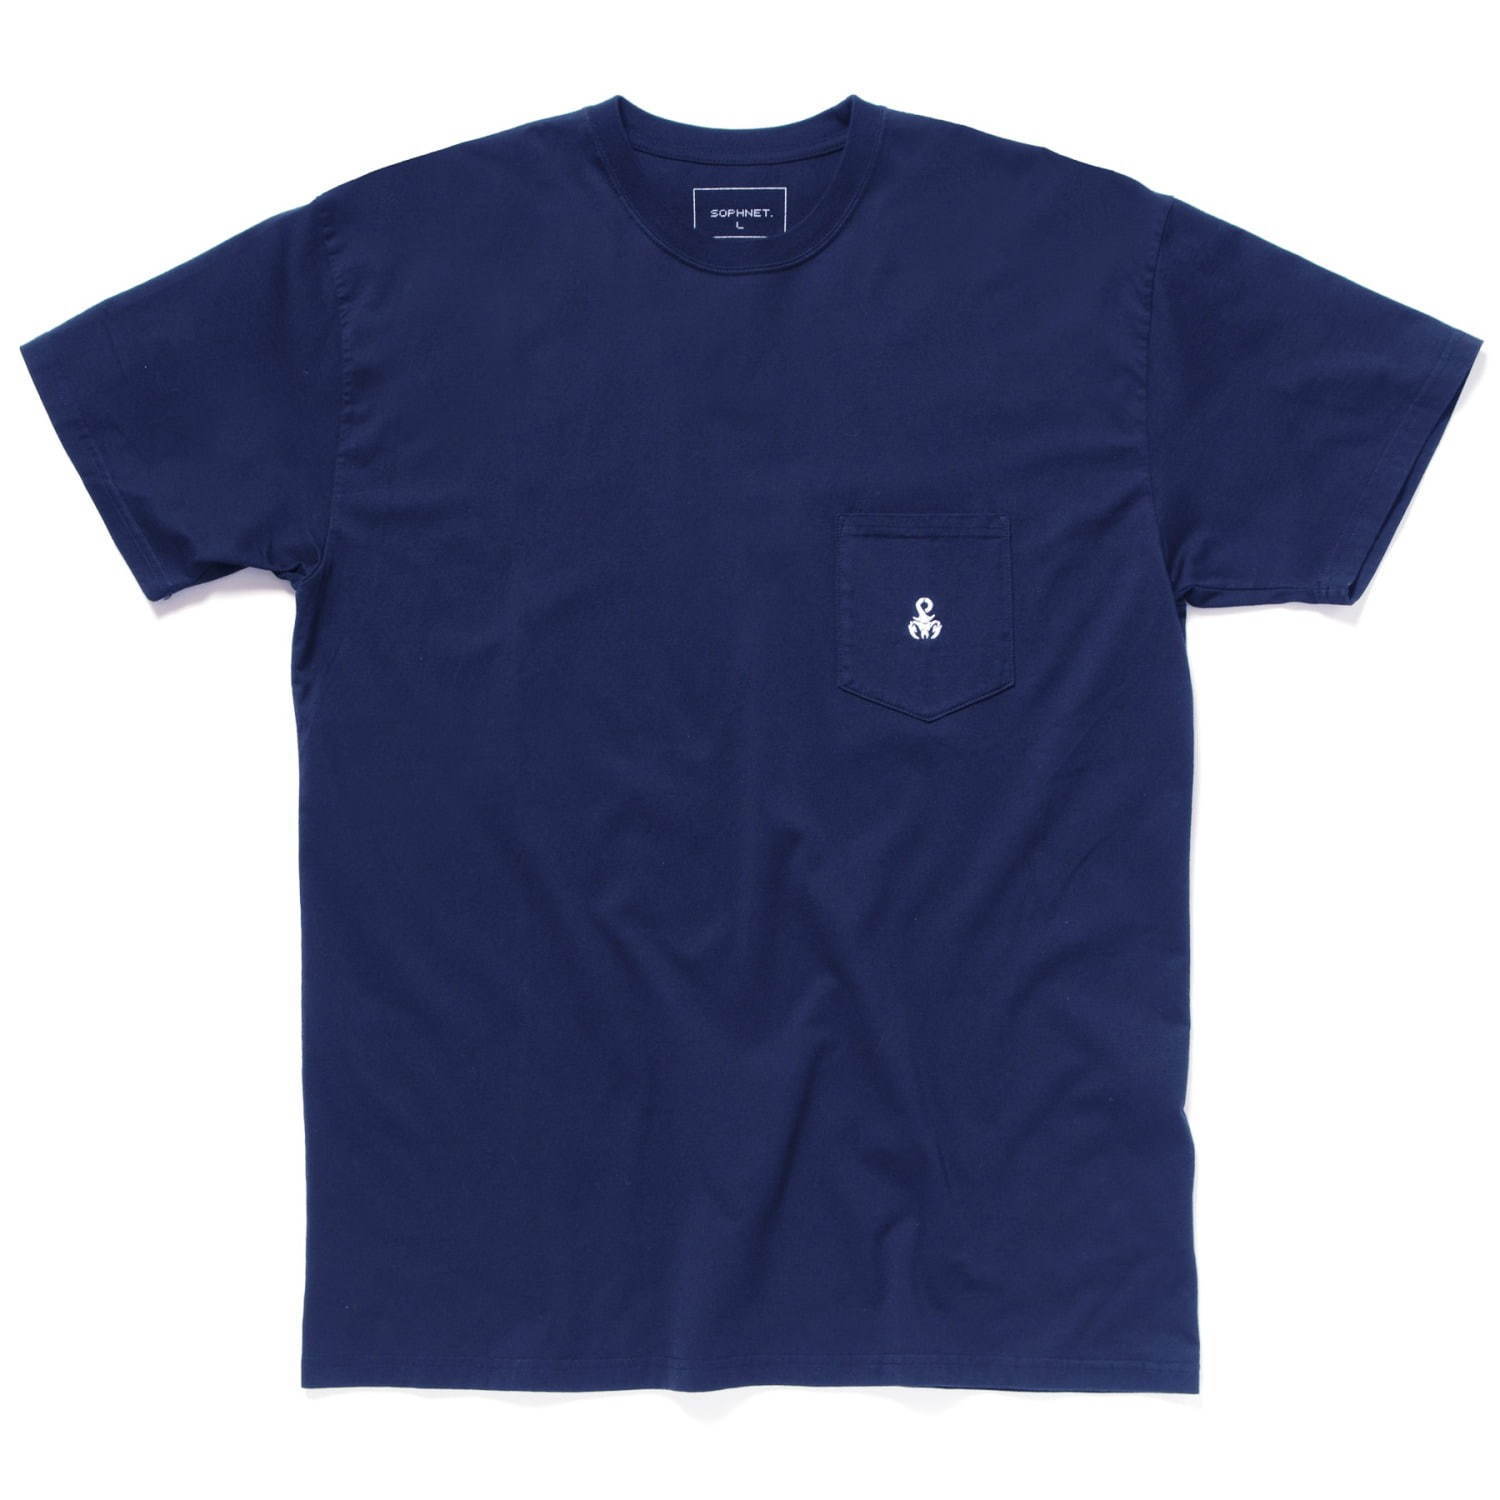 ソフネット“サソリ刺繍”入りコットン素材のシンプルTシャツやキャップ 